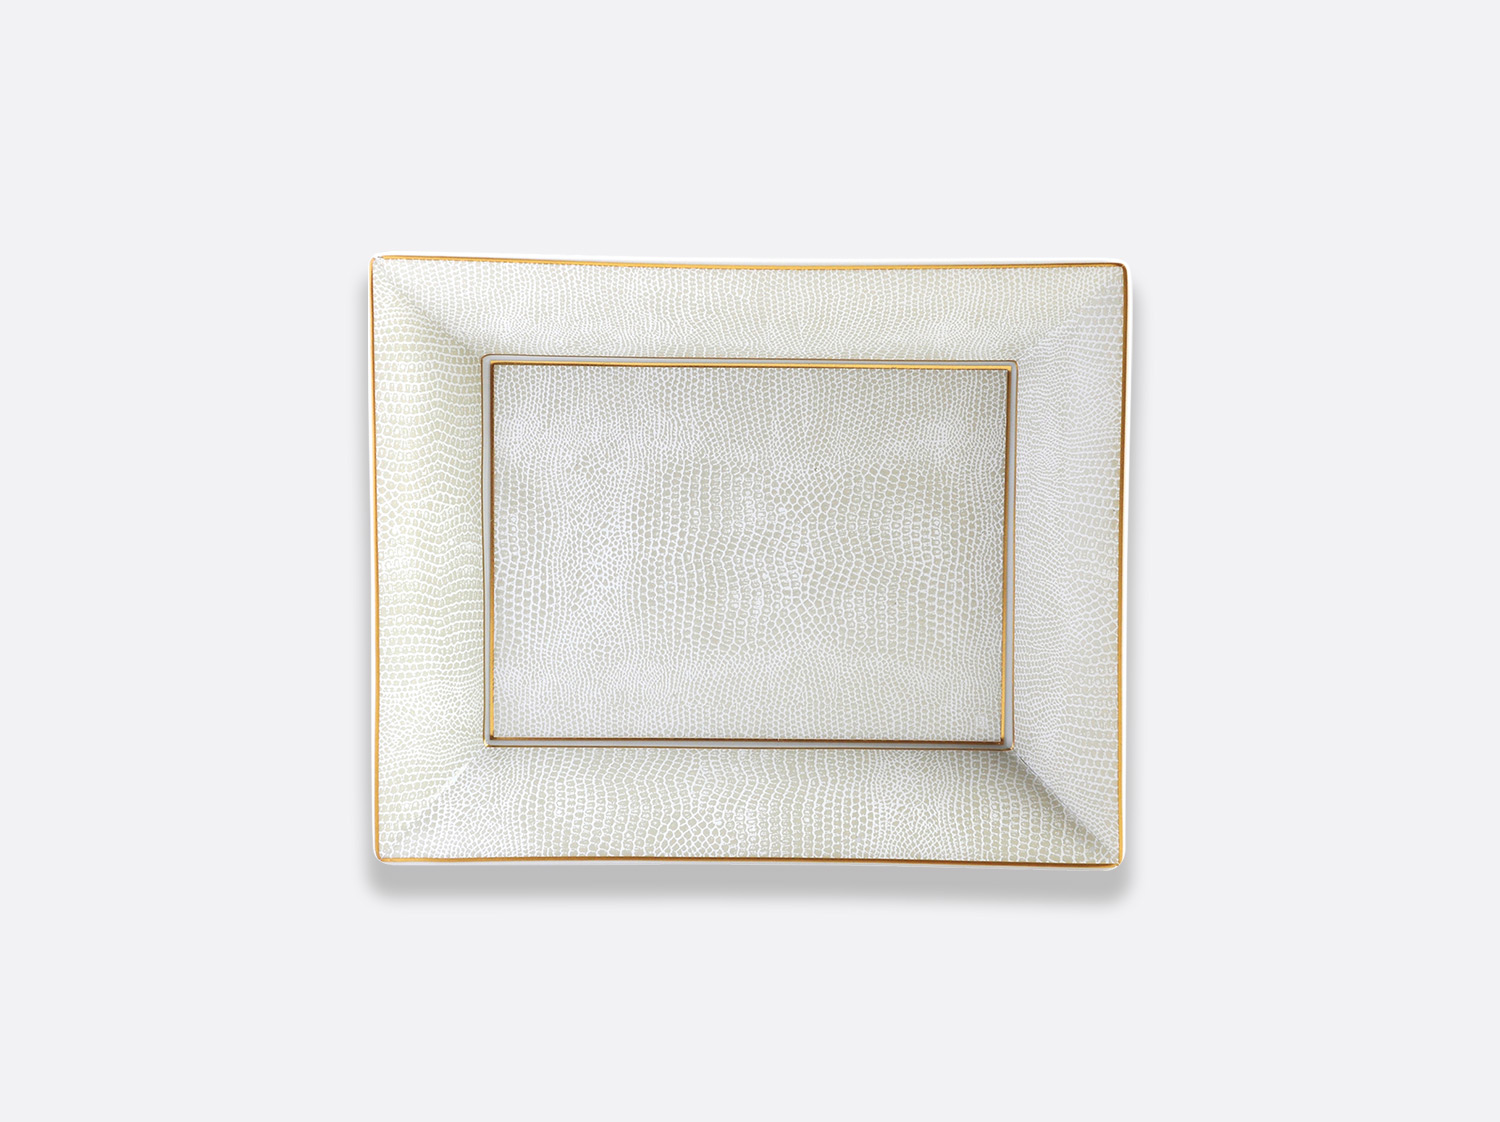 Vide-poches 20 x 16 cm en porcelaine de la collection Sauvage or Bernardaud